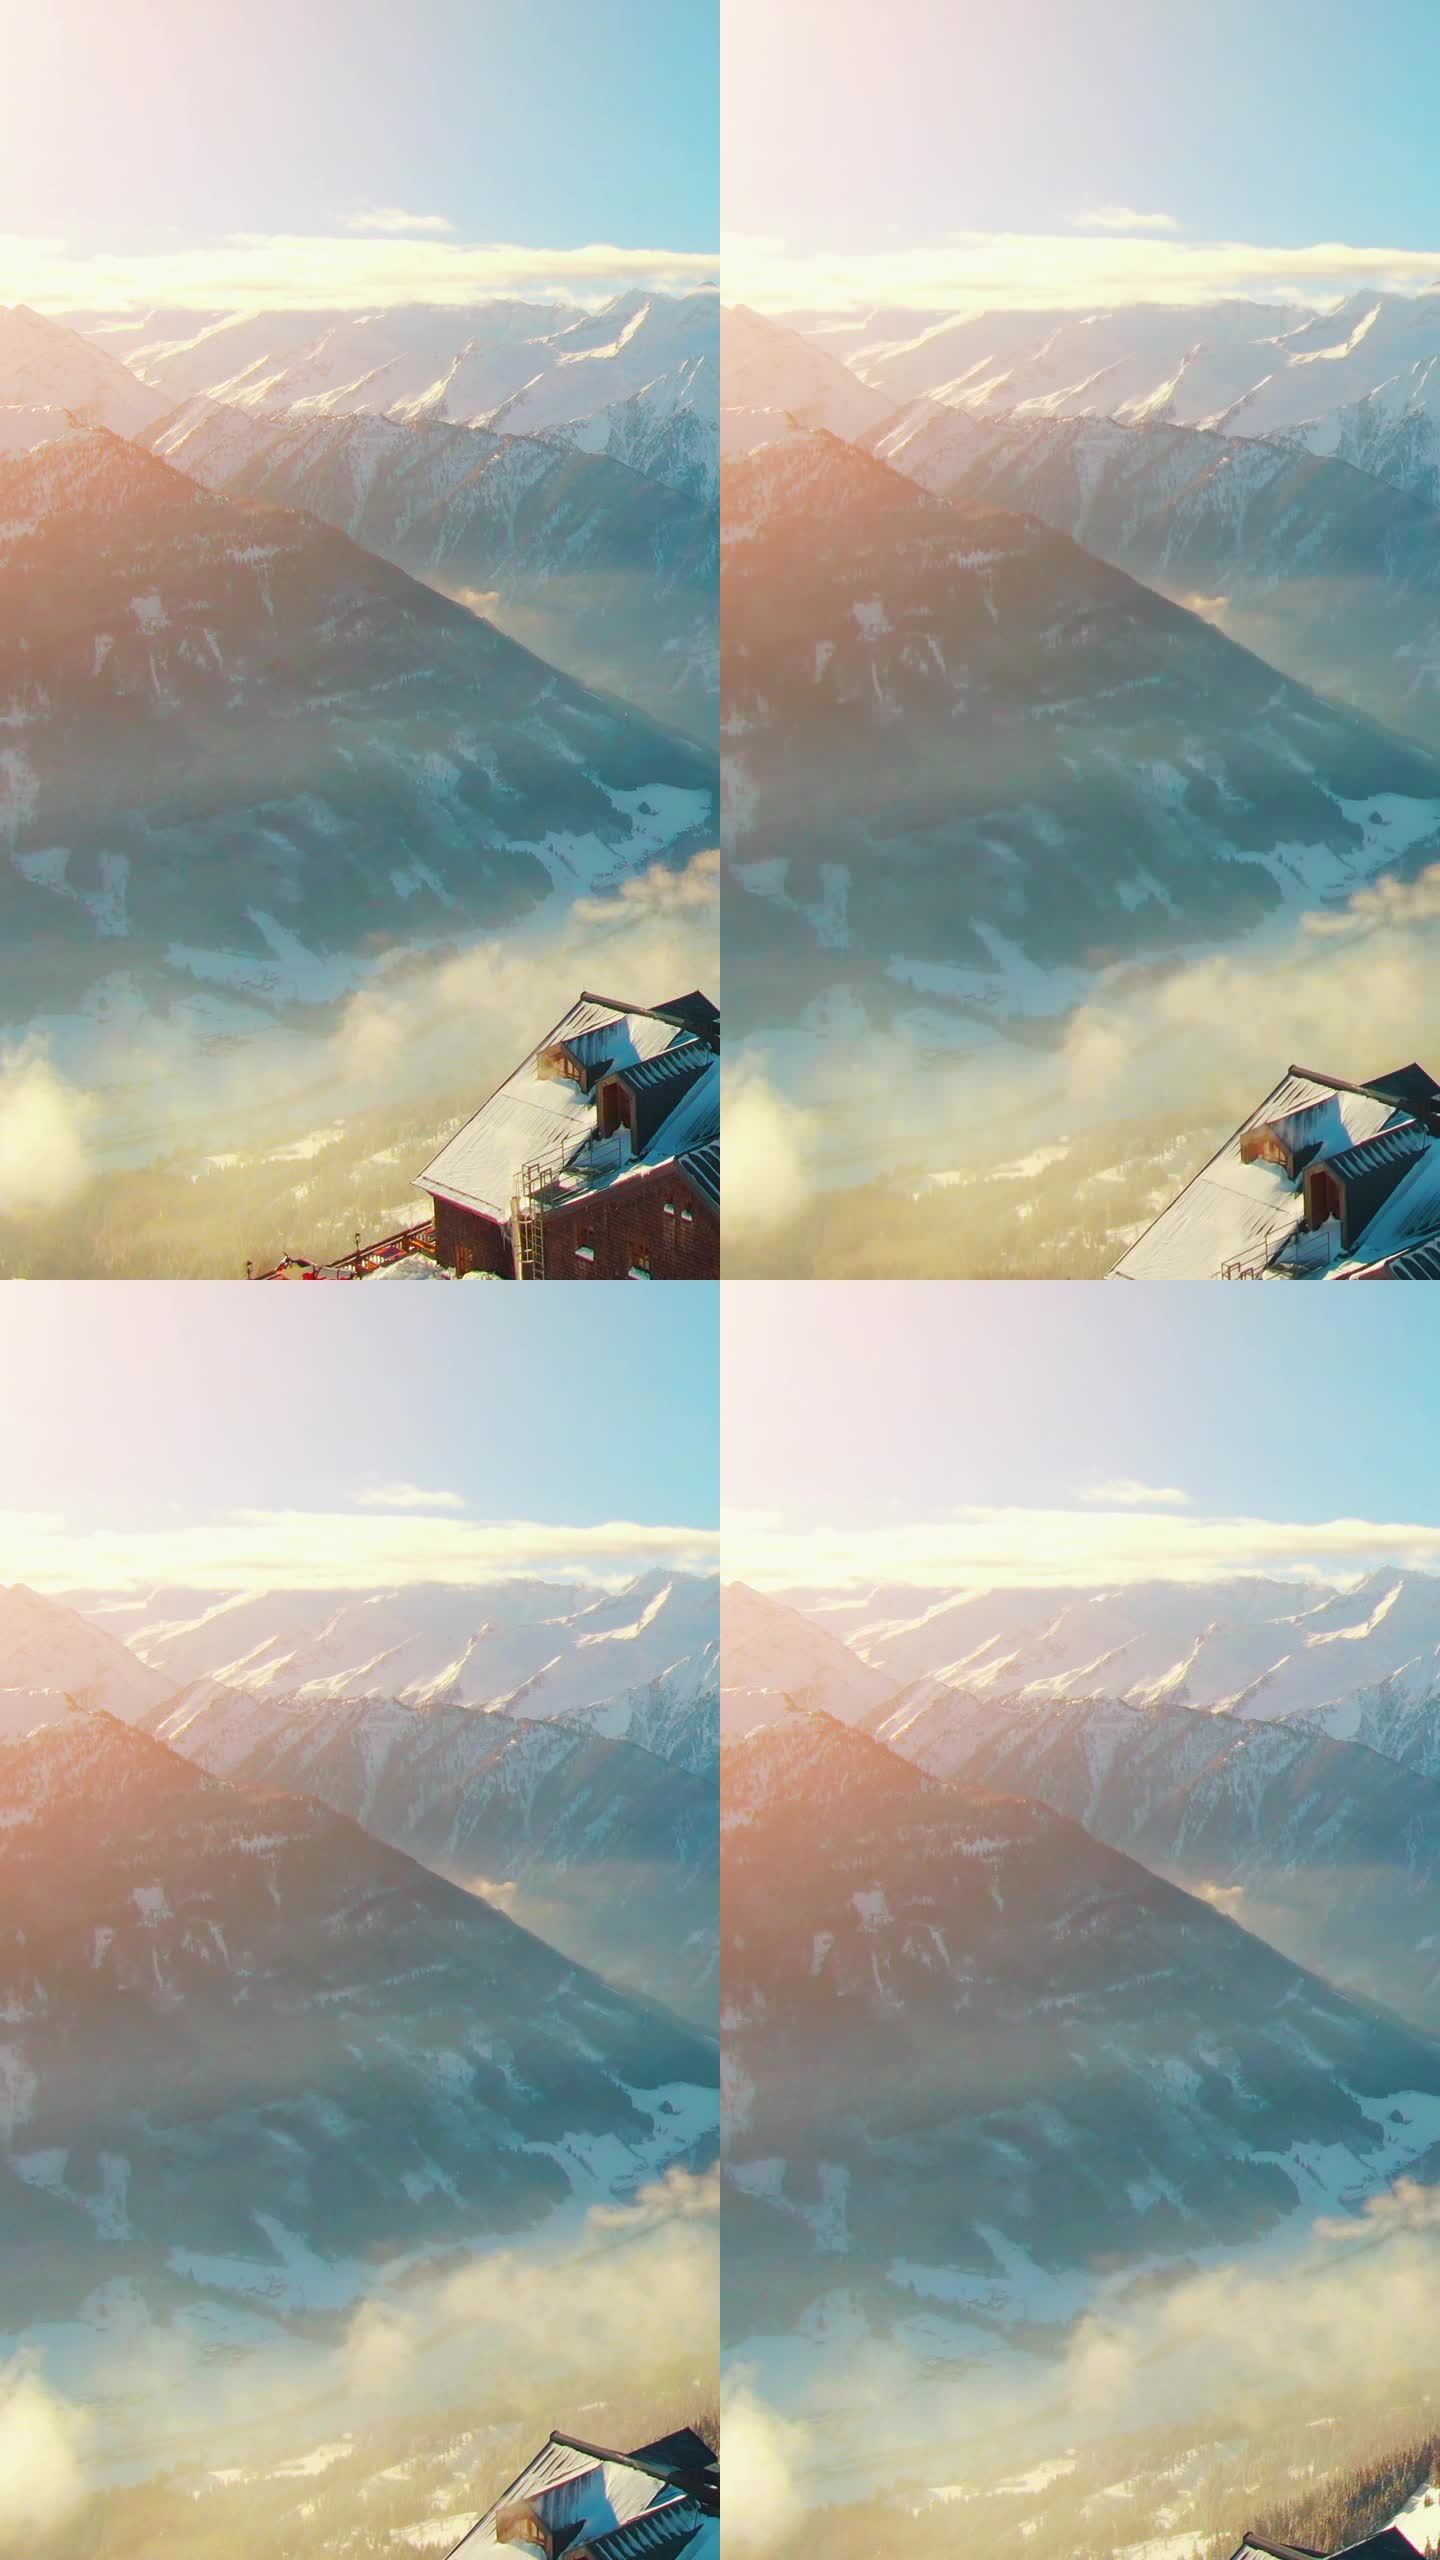 在一个阳光明媚的下午，空中直升机拍摄了宁静的乡村山区景观，白雪覆盖的山峰和奥地利阿尔卑斯山的滑雪胜地